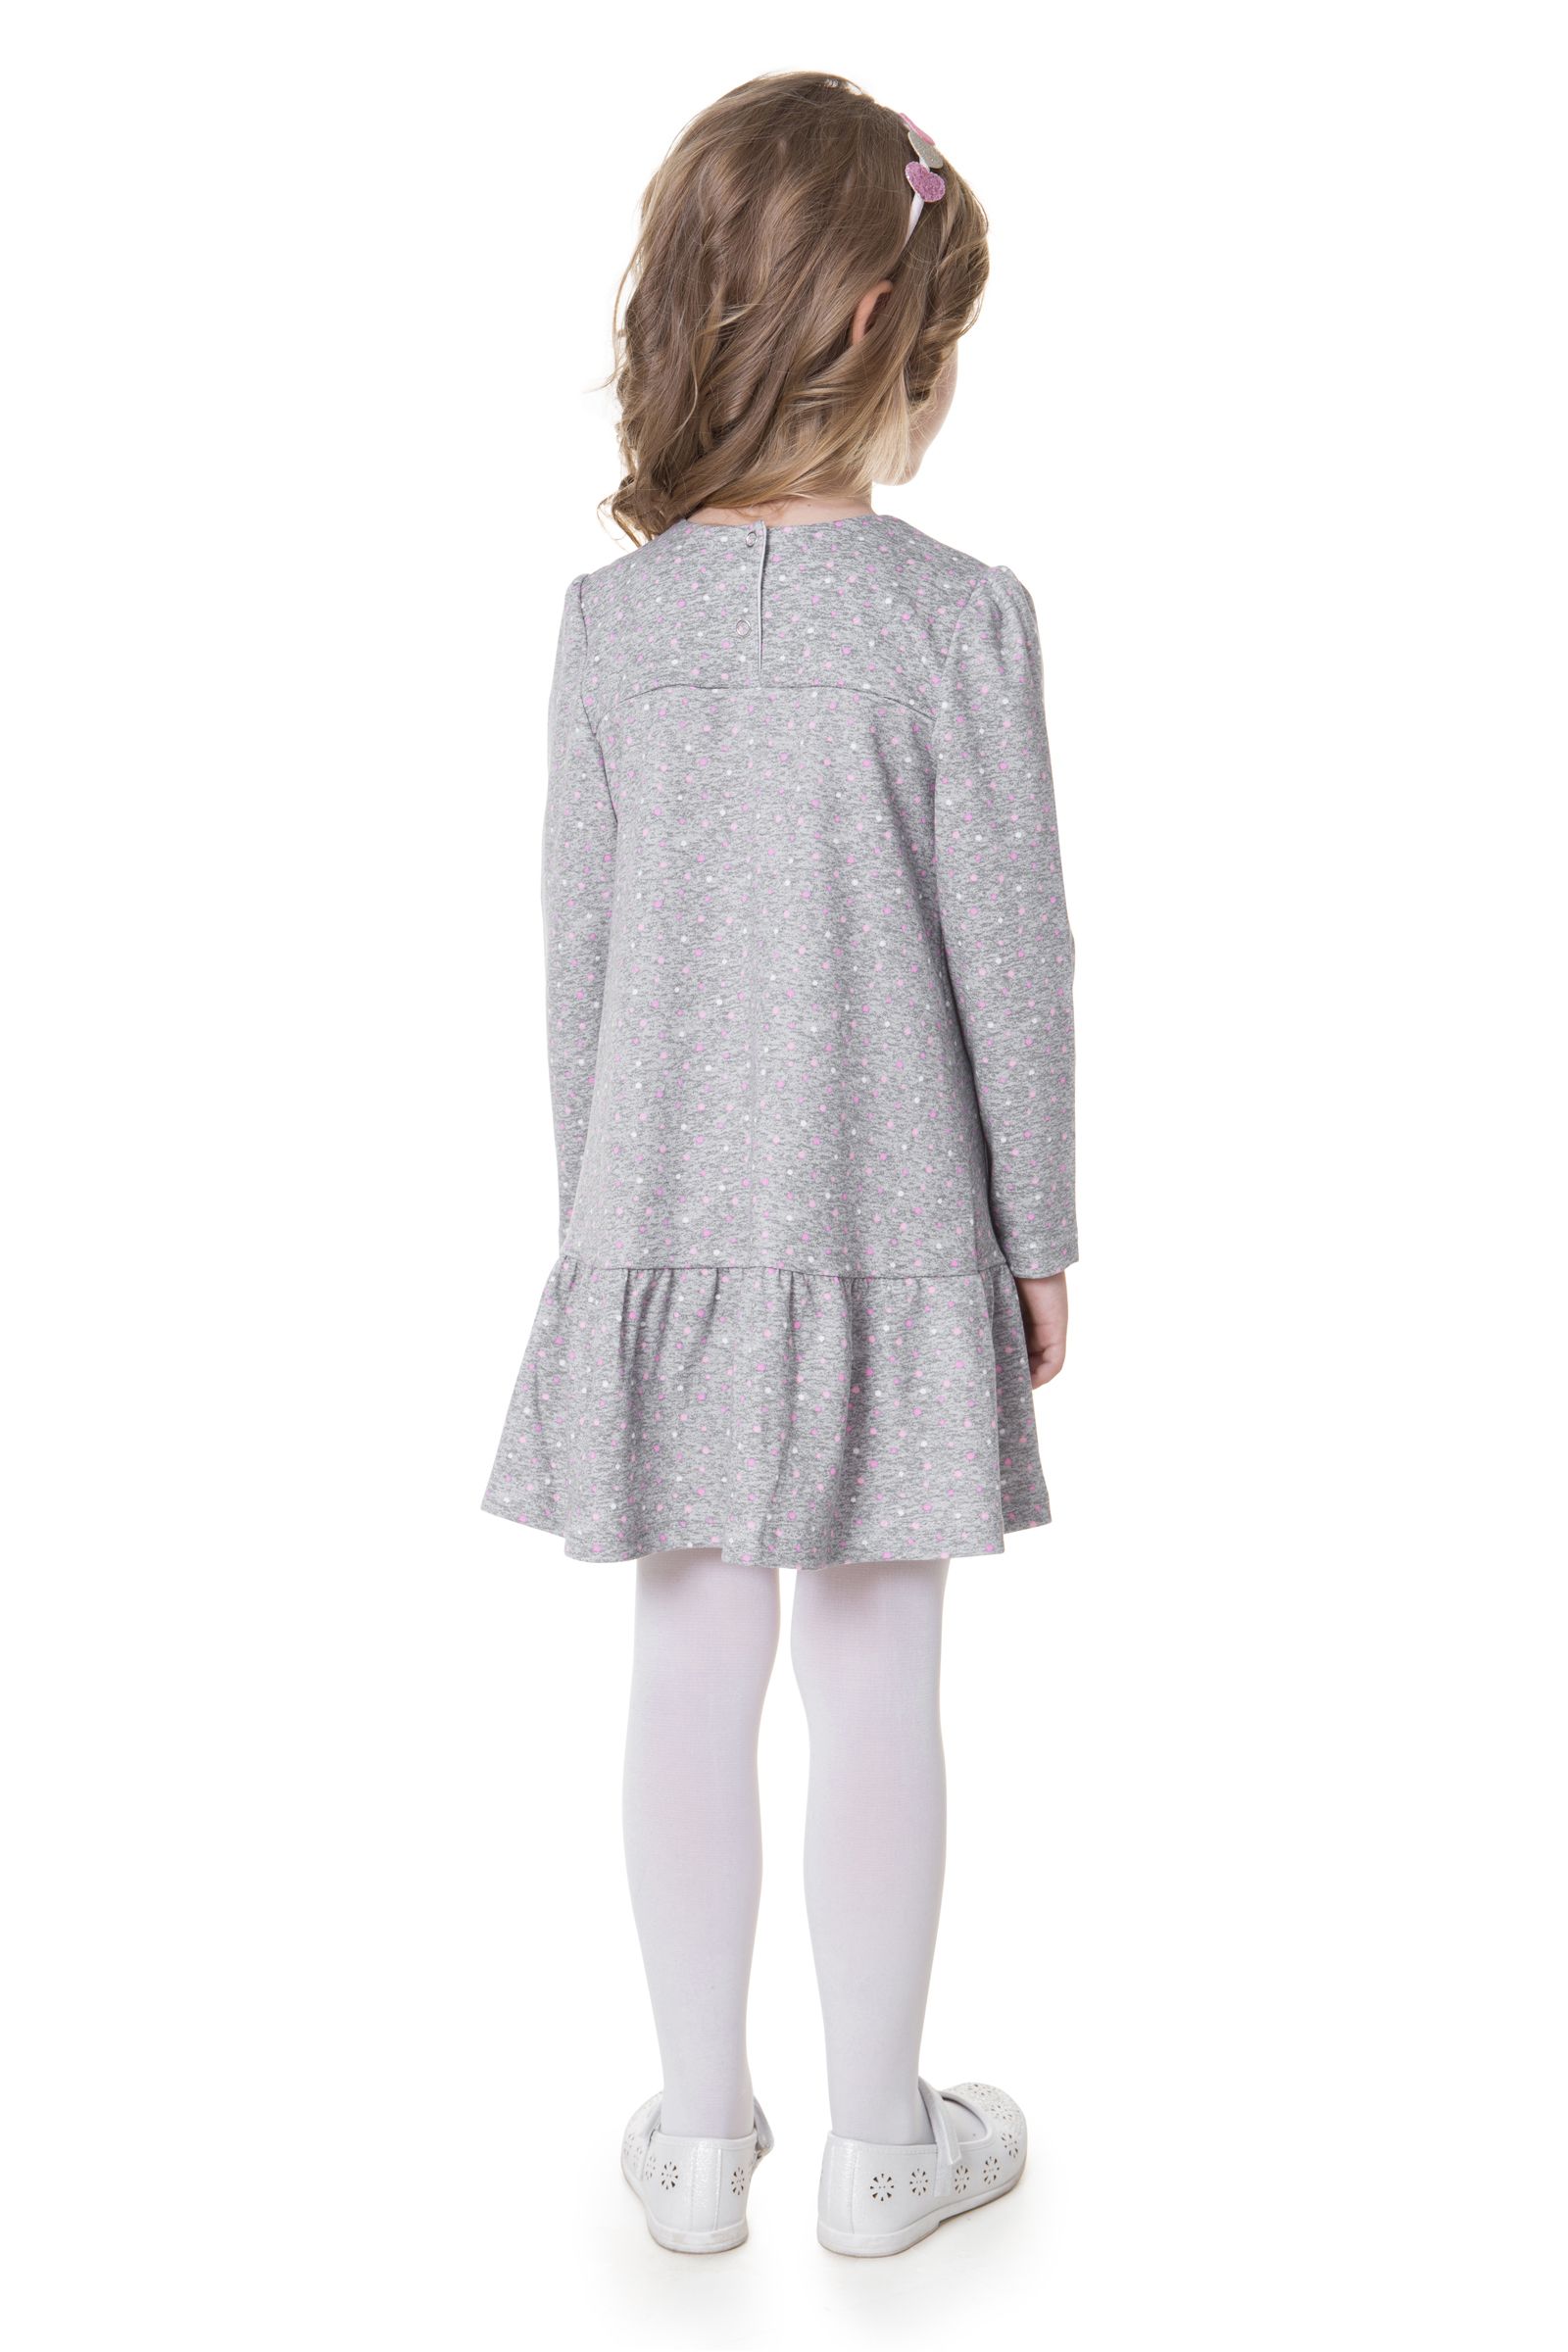 Платье-ПЛ01-3459 оптом от производителя детской одежды 'Алёна'